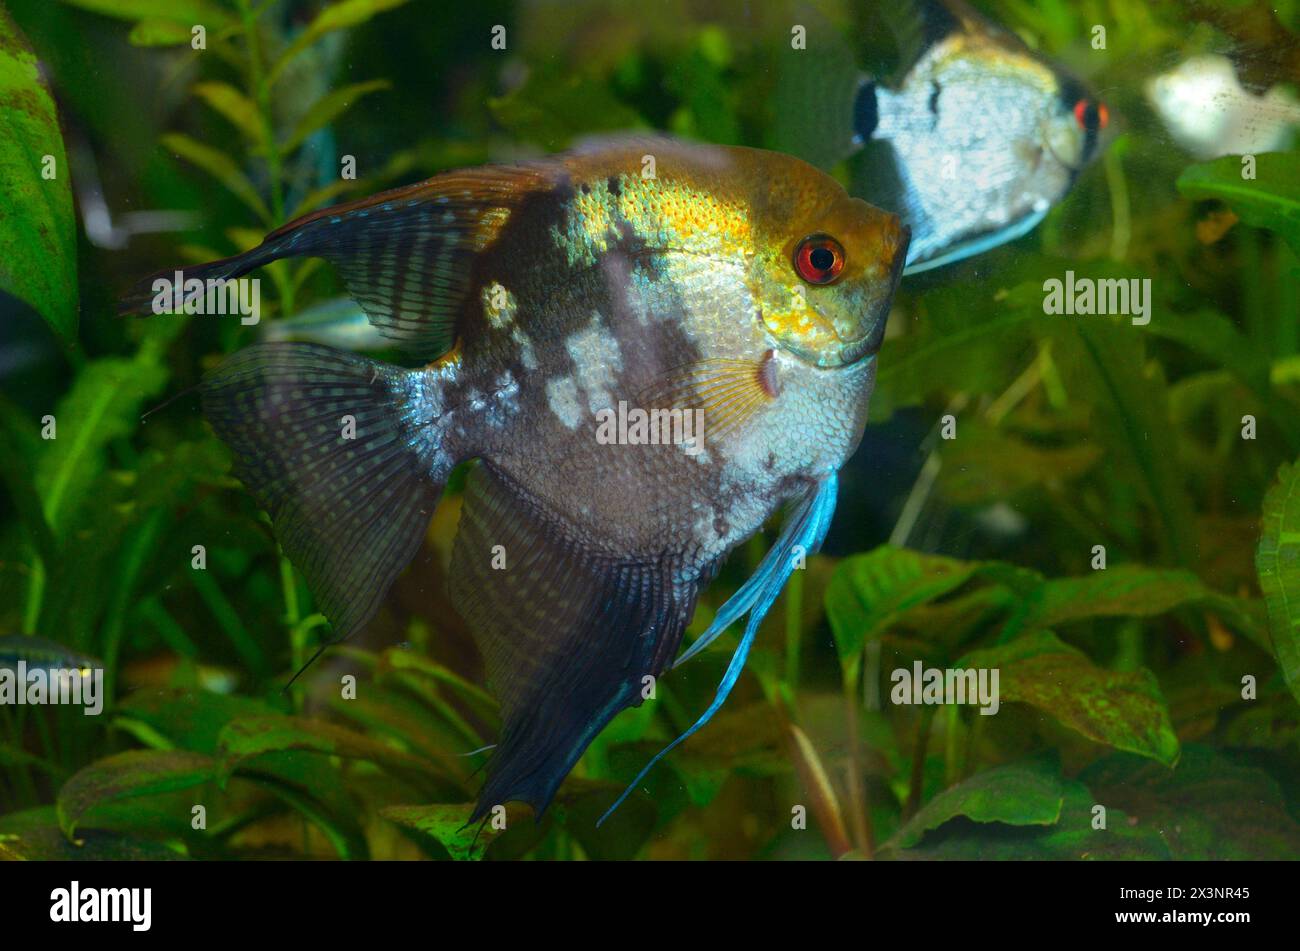 Accarezza i pesci dai colori vivaci Pterophyllum scalare, pesci angelo o pesci angelo d'acqua dolce, nuotando nell'acquario. Foto Stock